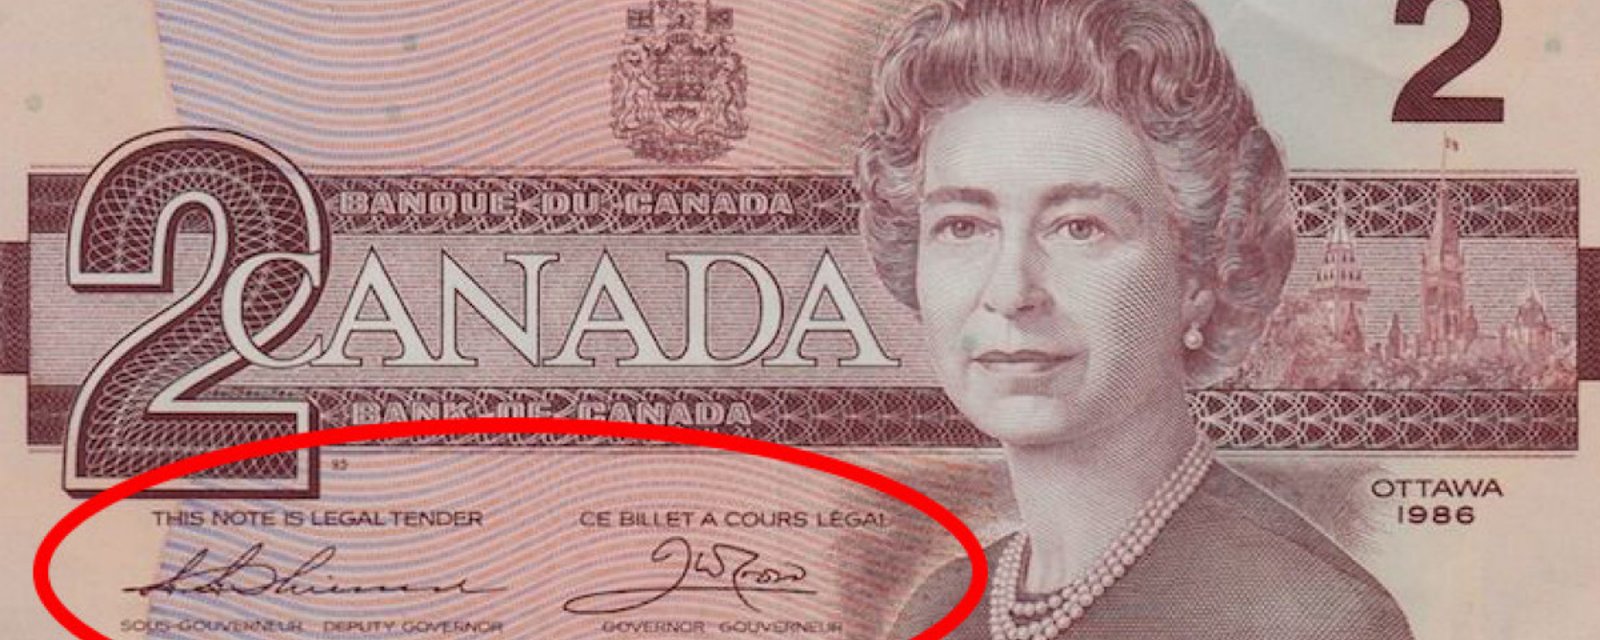 Avez-vous gardé des vieux billets de banque canadiens? Ce billet de 2 $ pourrait valoir 10 000 $!